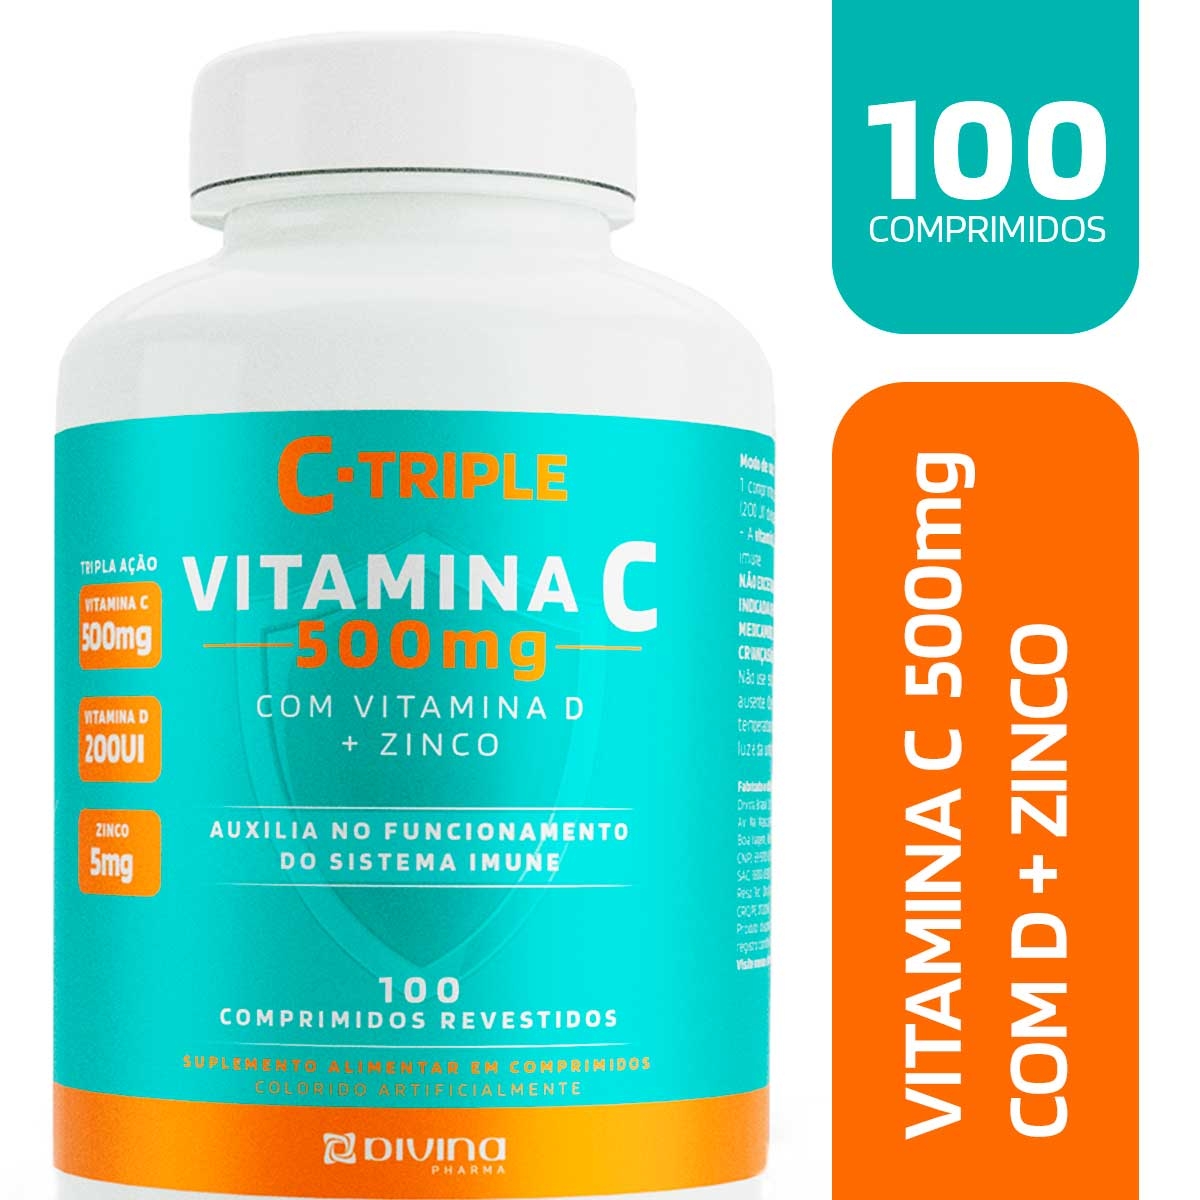 C-Triple Vitamina C 500mg com Vitamina D + Zinco com 100 comprimidos